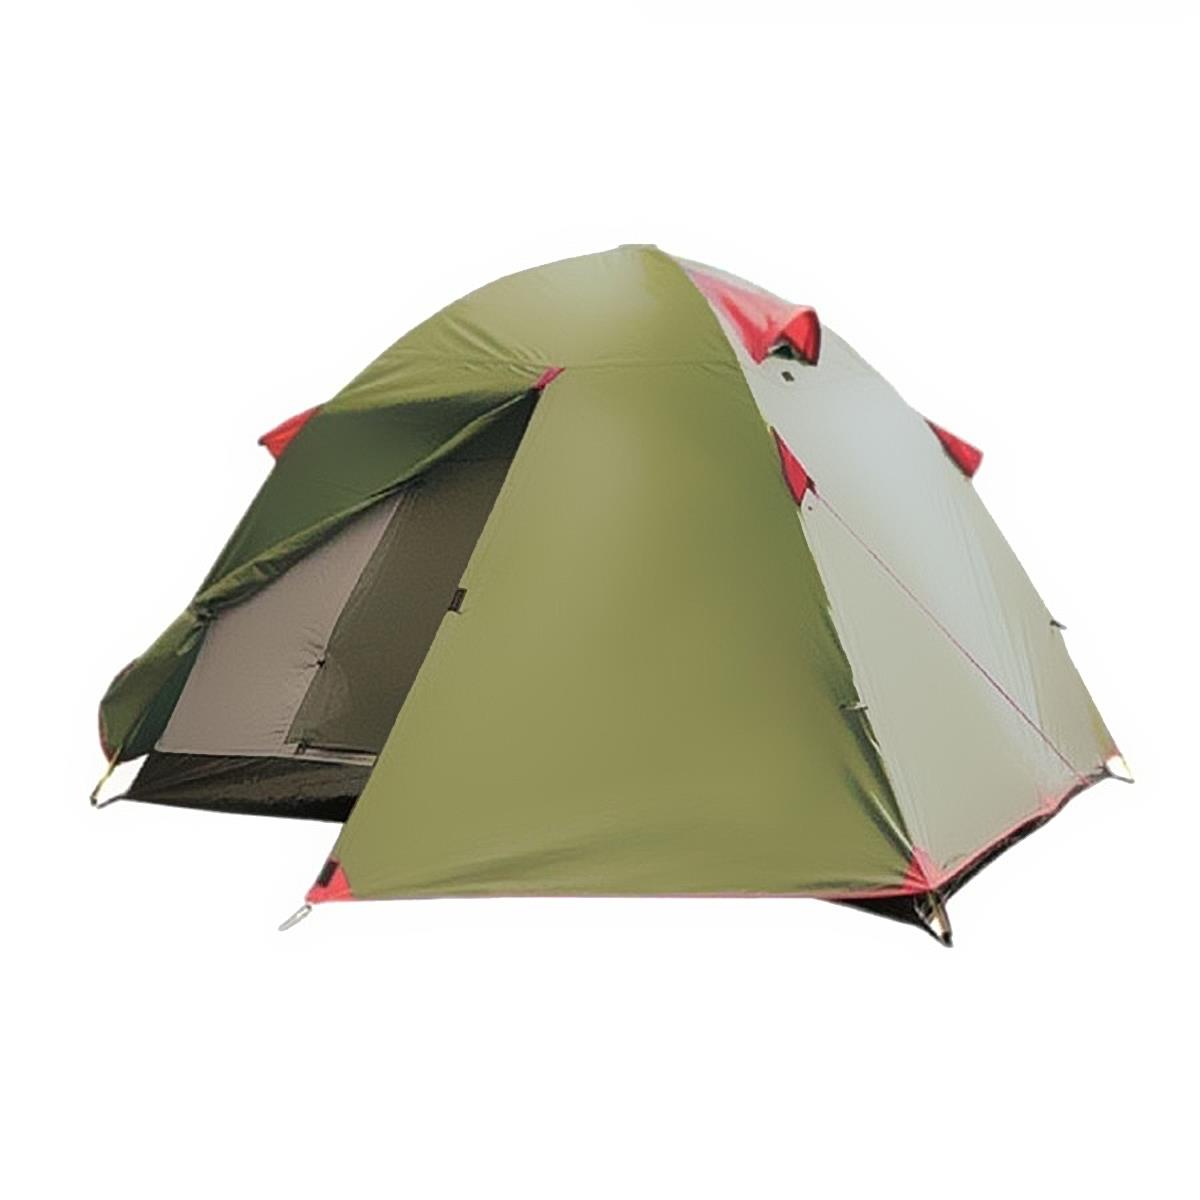 Туристическая палатка LITE TOURIST 3 TLT-002 Tramp палатка шатер trimm shelters sunshield песочный 45571